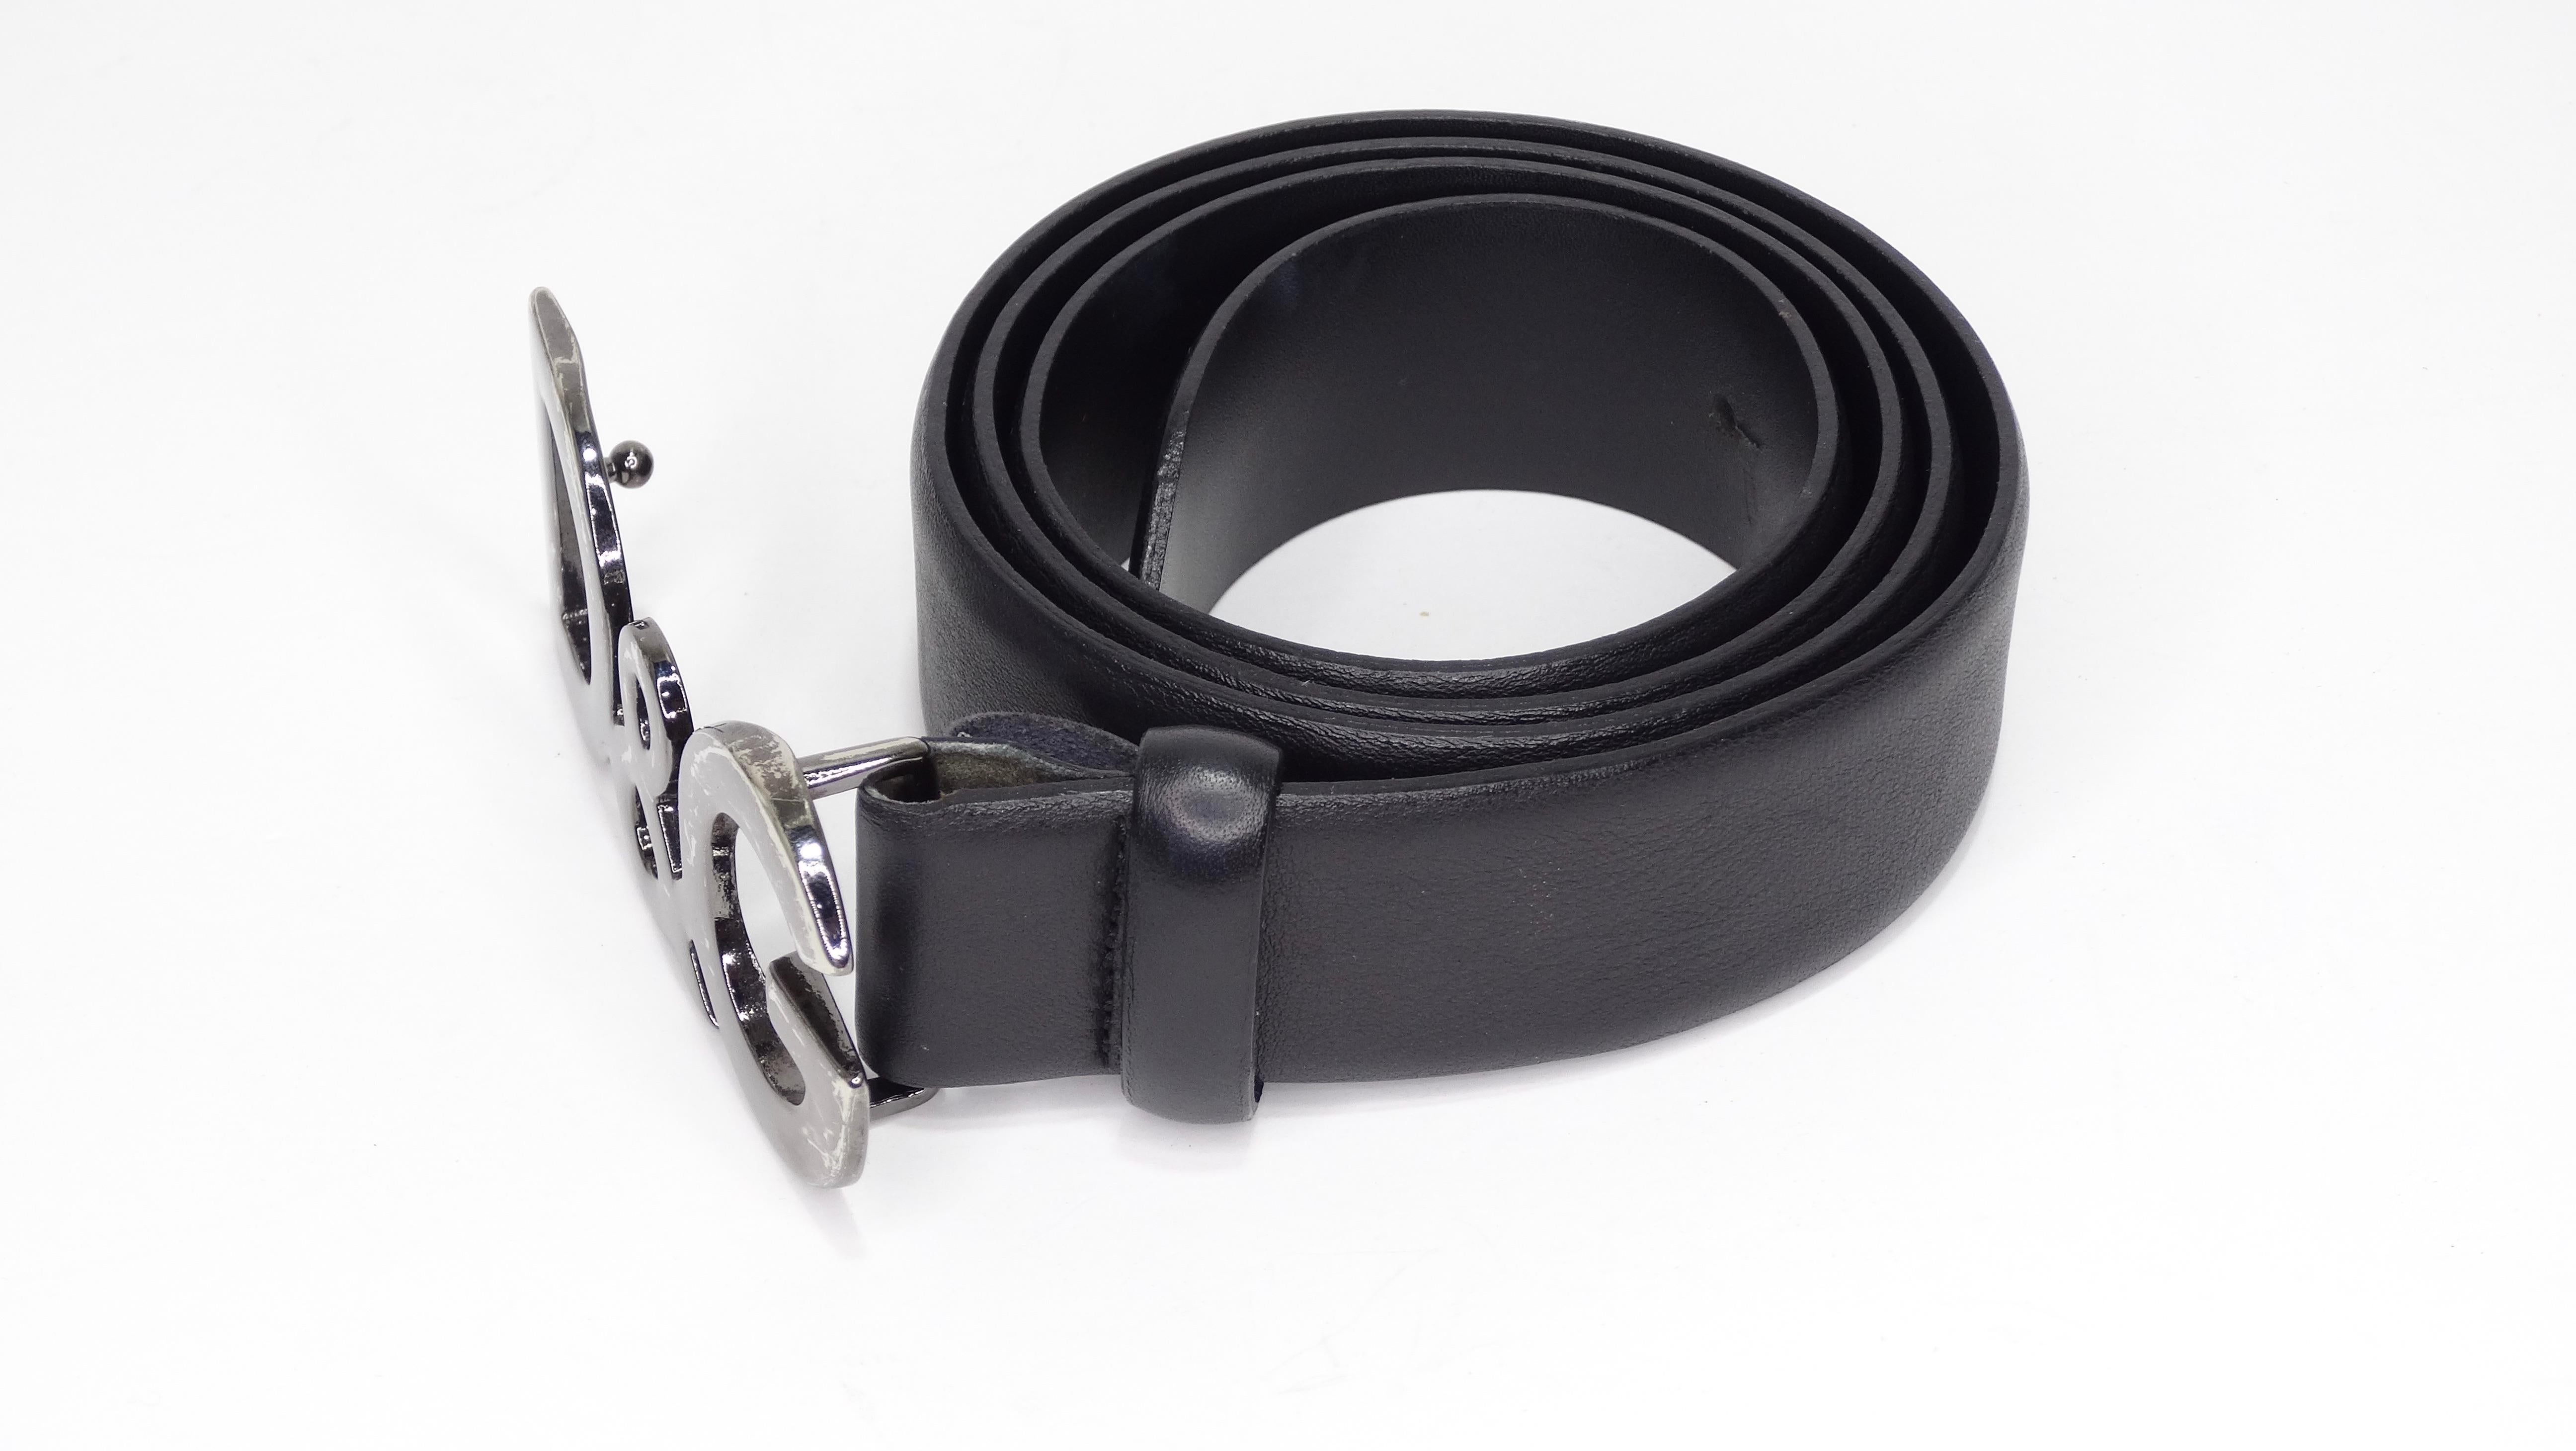 Circa 2000s, cette ceinture Dolce & Gabbana est une pièce maîtresse de votre garde-robe ! Réalisée en cuir noir lisse, cette ceinture est dotée d'une boucle D&G en métal gun et d'une fermeture à ergots. Parfait pour porter avec votre Levi's et votre